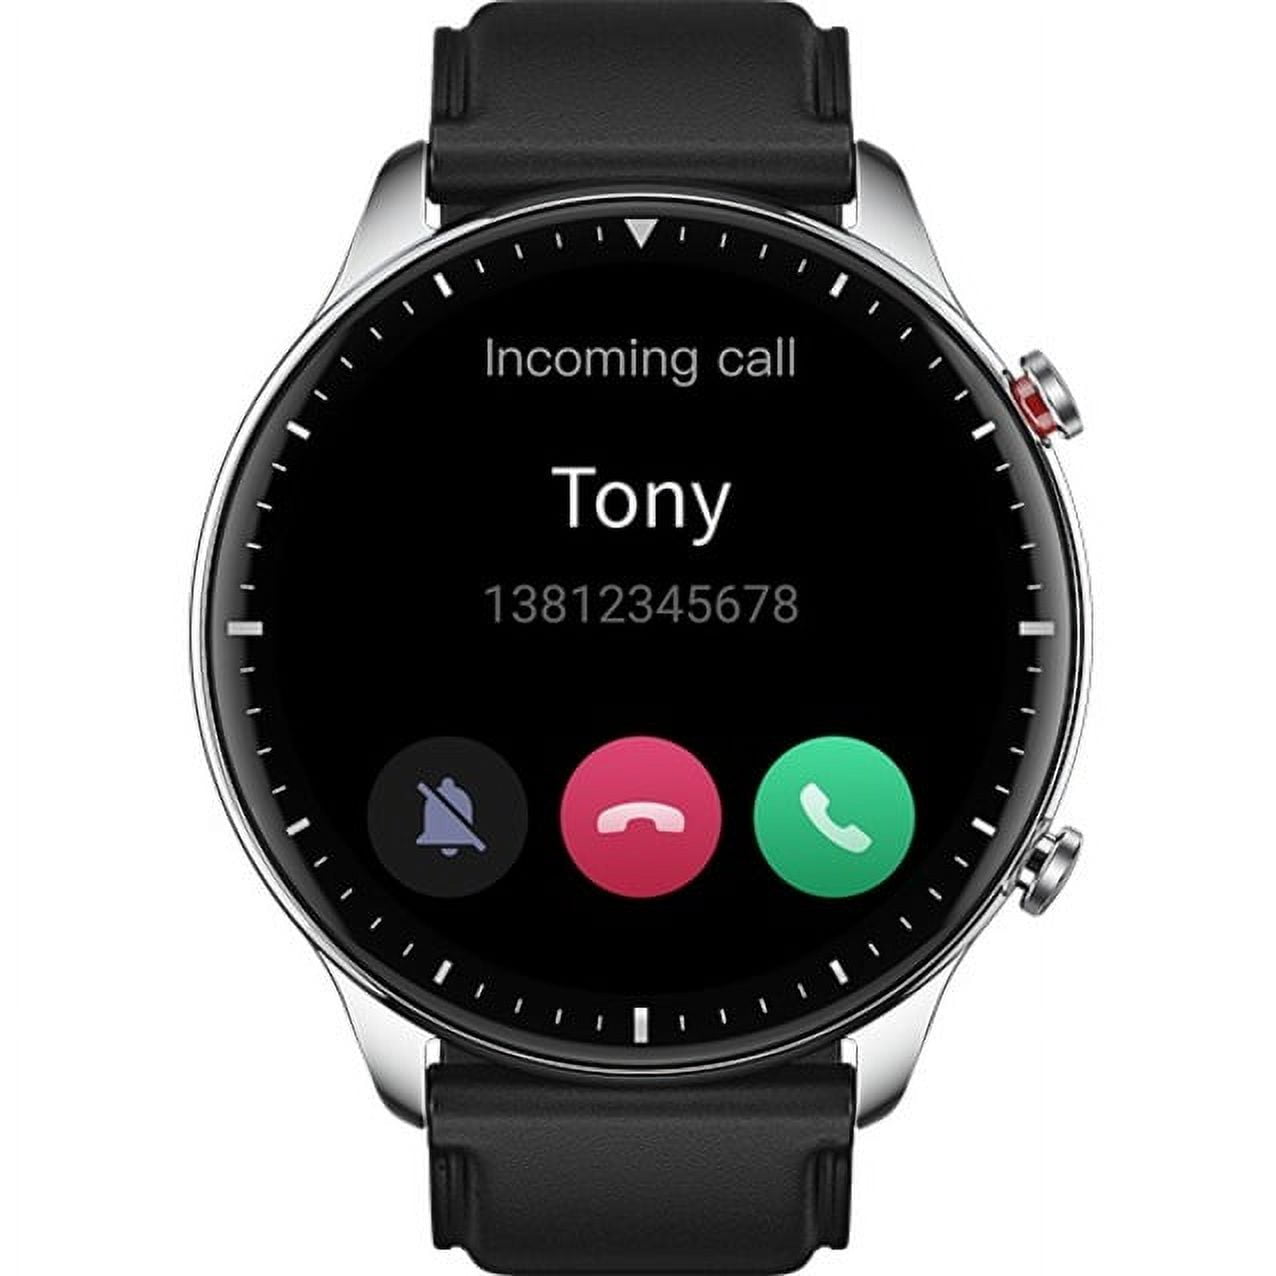 💥 Amazfit GTR 2 REVIEW en ESPAÑOL ⌚El smartwatch más completo de